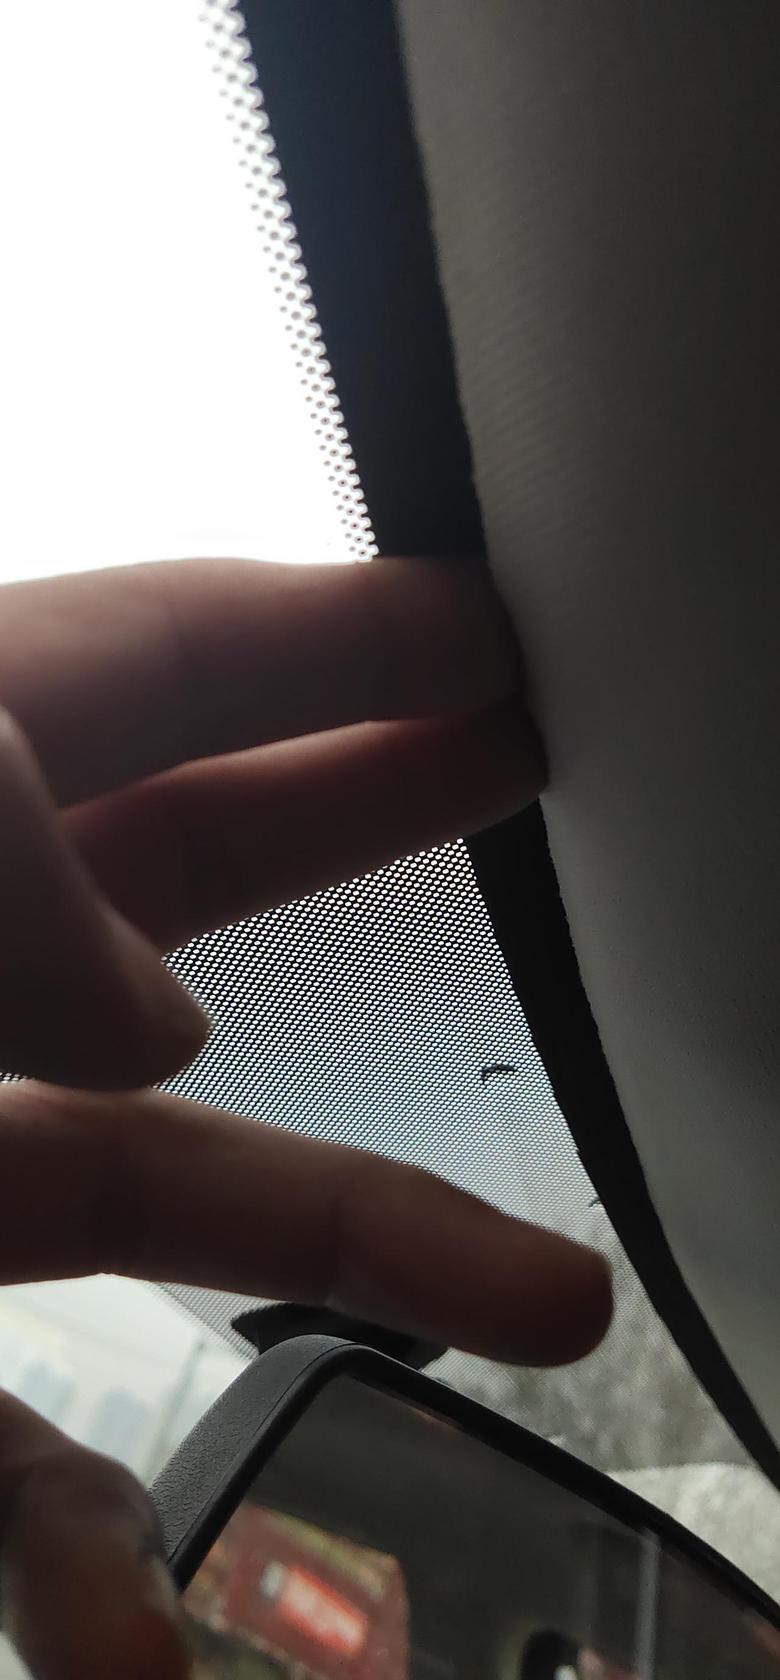 长安cs35 plus 车内前挡风玻璃的上沿和车顶结合的地方有很大的缝隙属于正常吗？